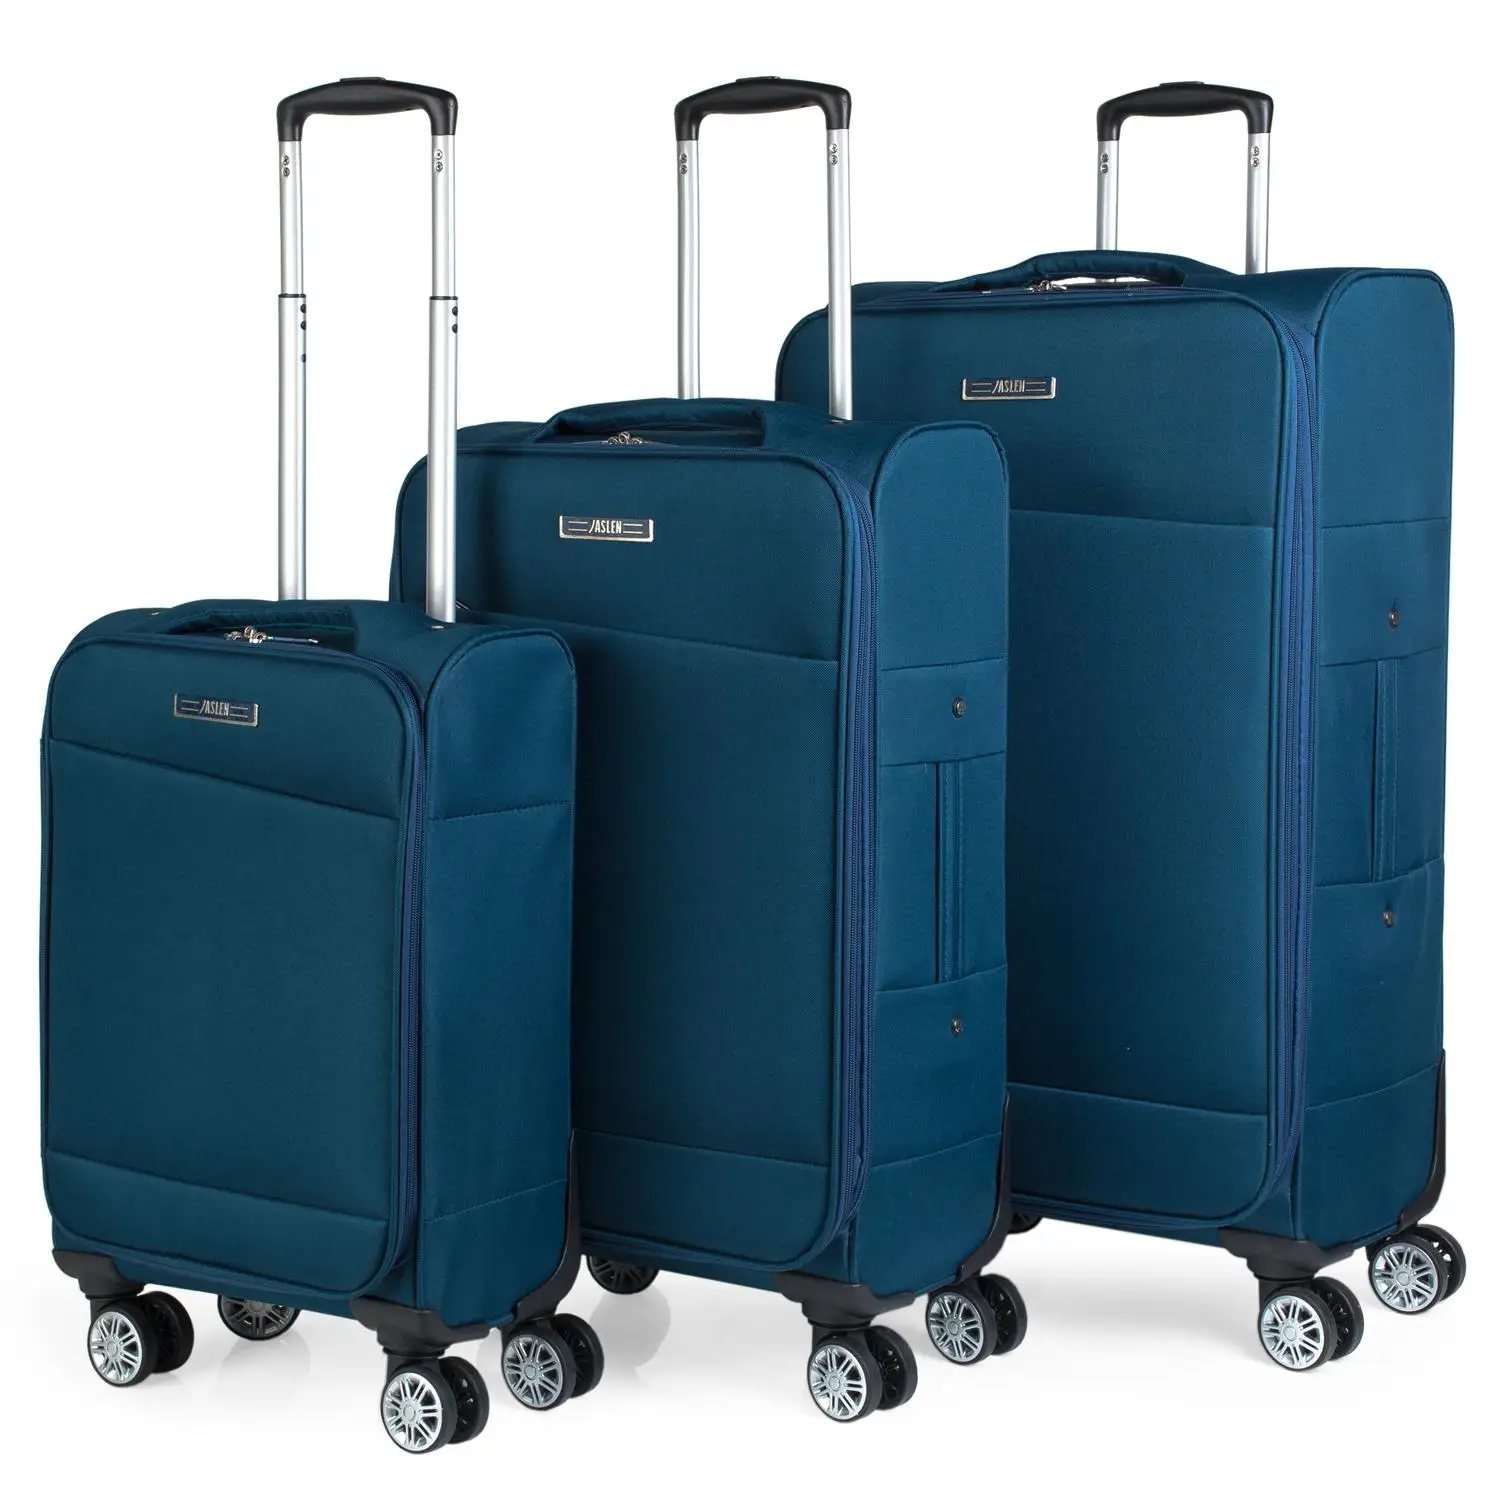 Jaslen модель Helsinki набор из 3 дорожные чемоданы из мягкого полиэстера в 3 цветах 101000 - Цвет: Синий